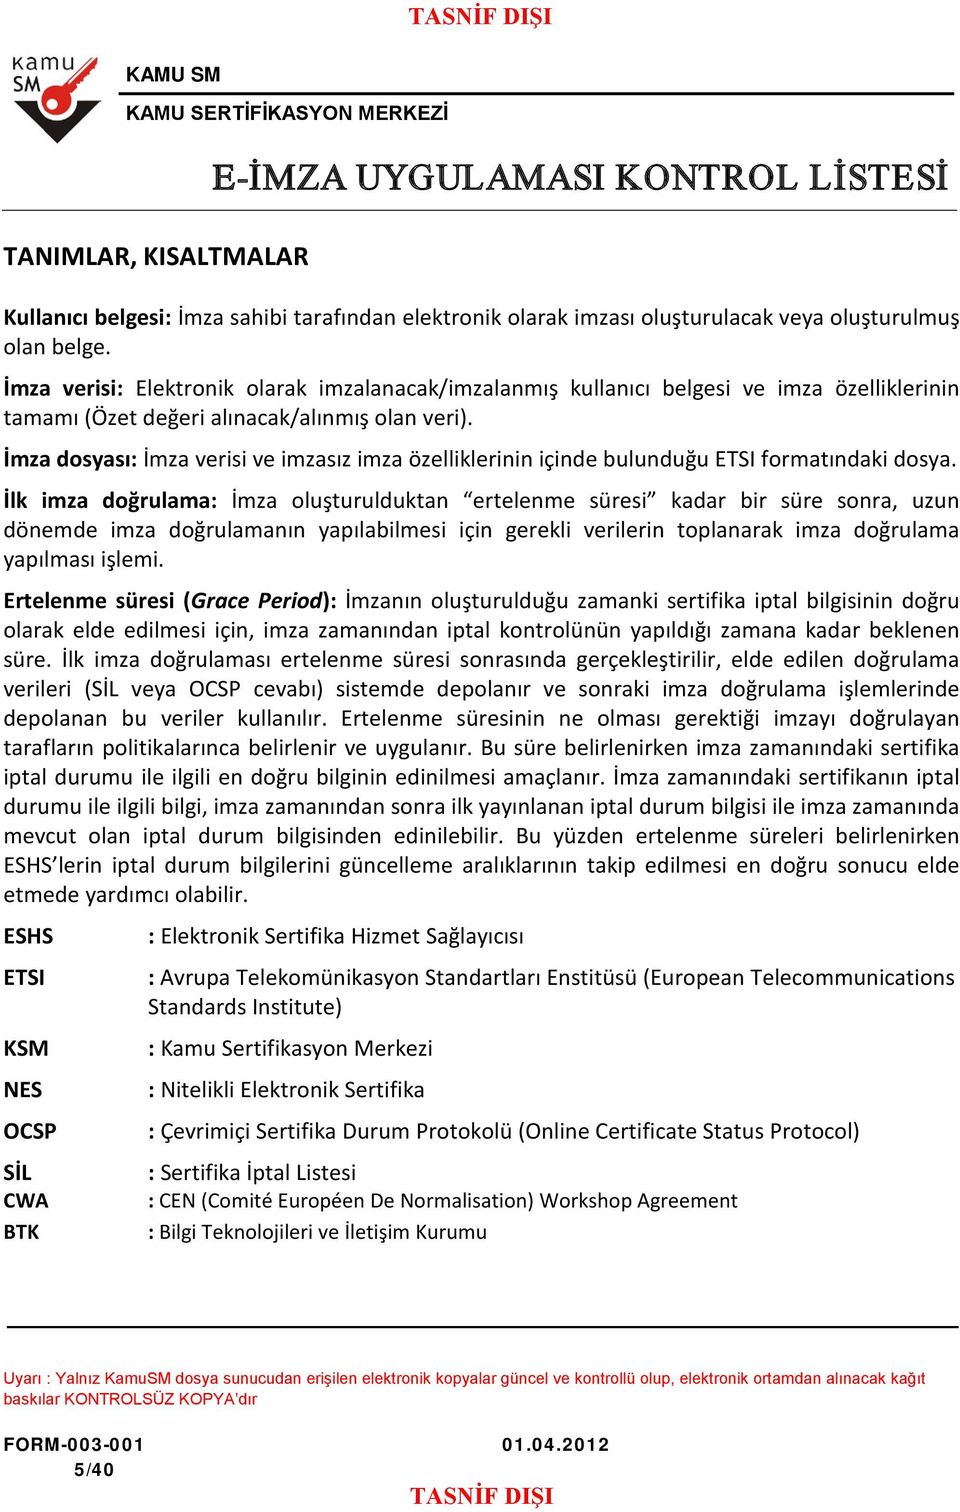 İmza dosyası: İmza verisi ve imzasız imza özelliklerinin içinde bulunduğu ETSI formatındaki dosya.